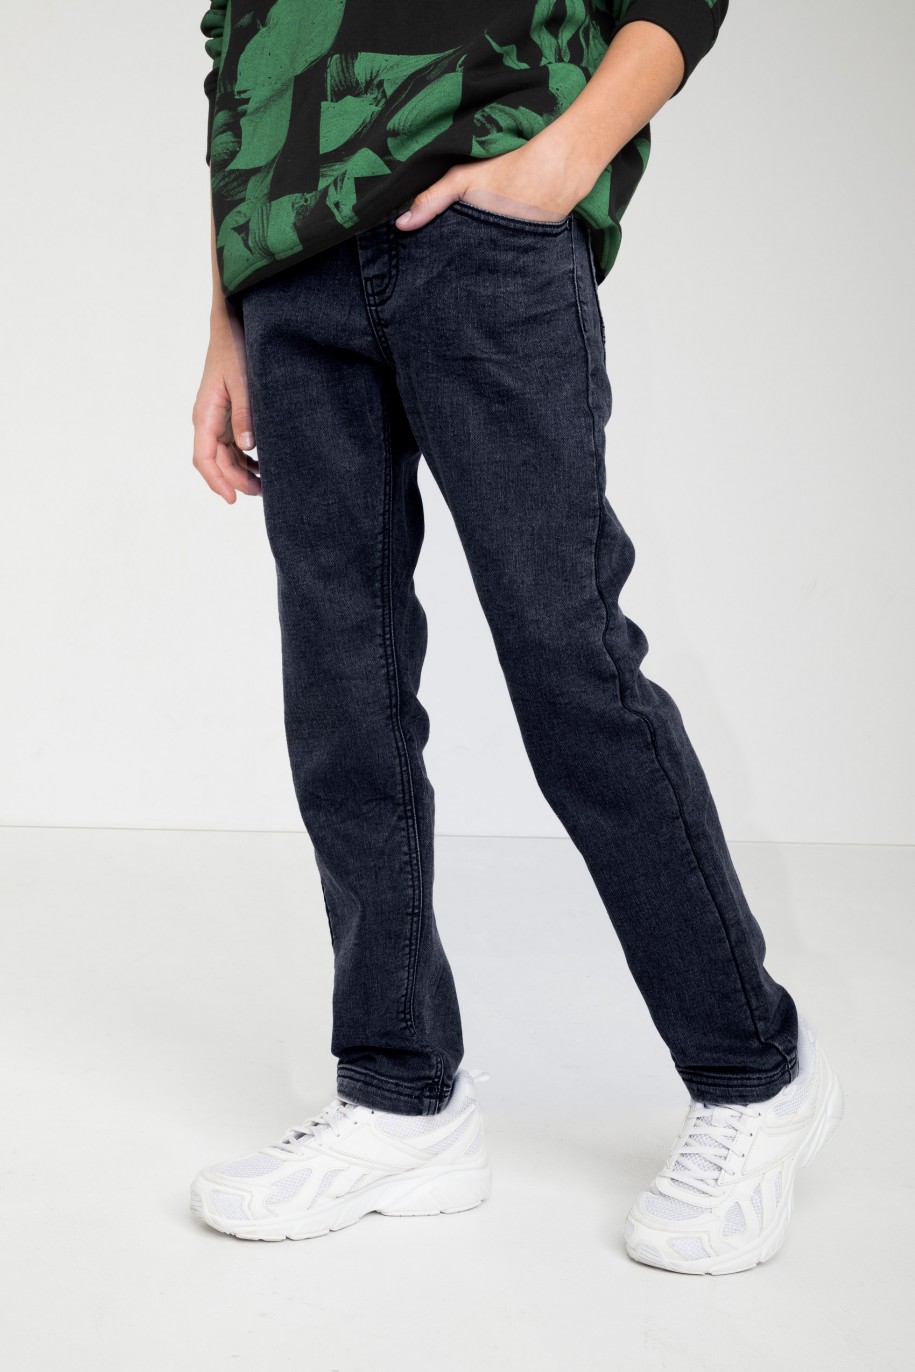 Granatowe jeansy z wąskimi nogawkami - 46544